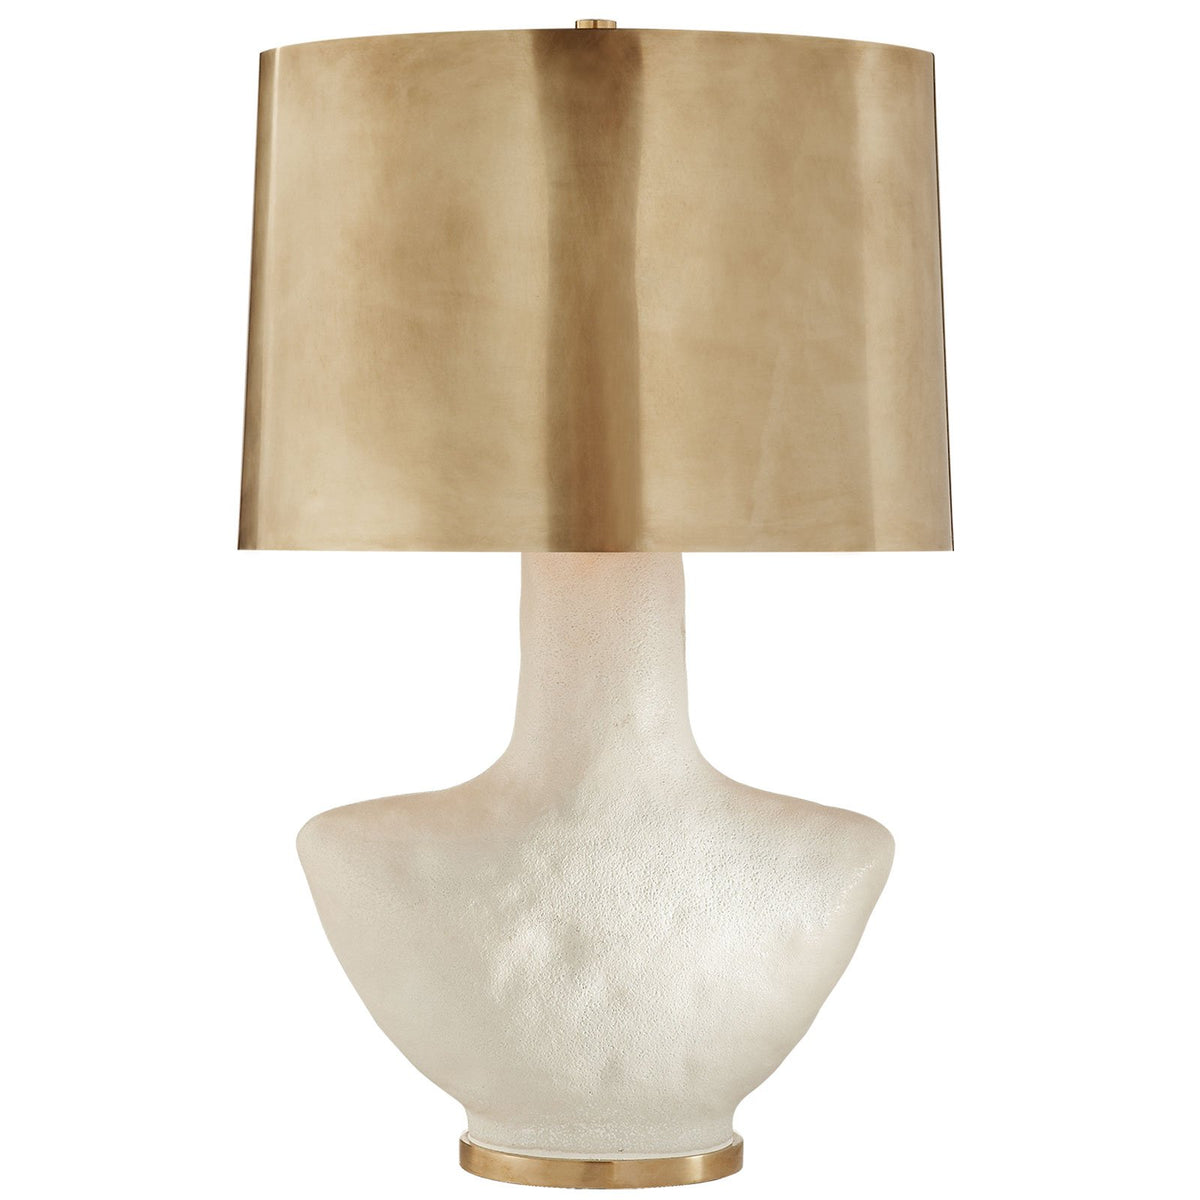 Armato Table Lamp, White & Brass